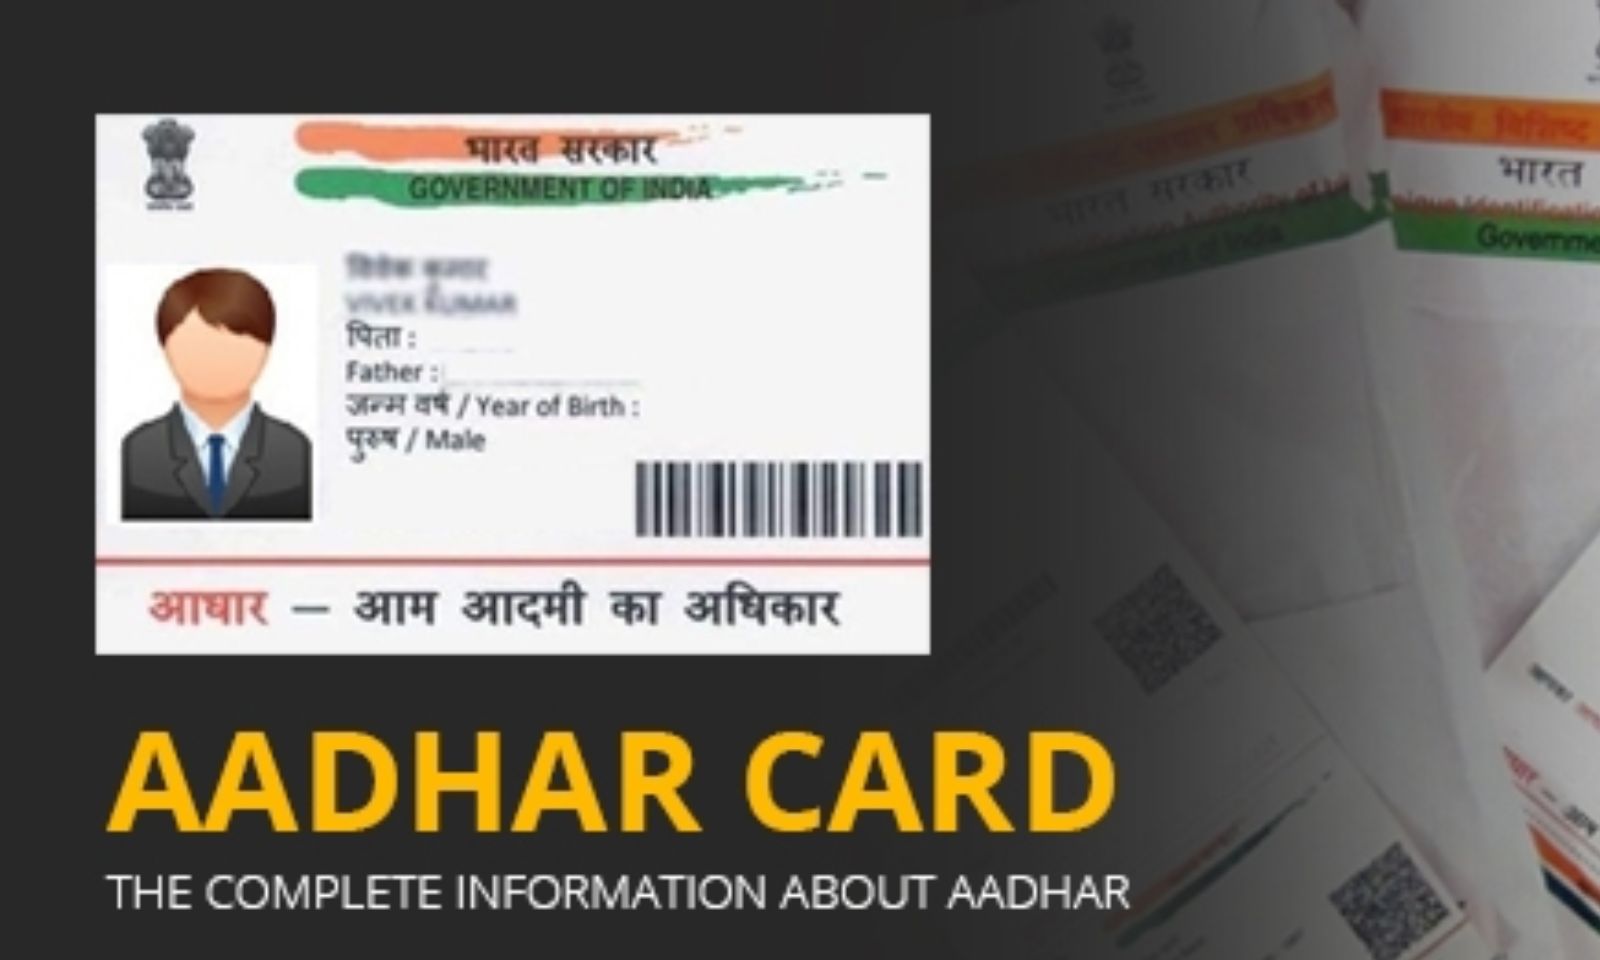 Aadhaar card fraud: होटल बुकिंग के समय देते हैं आधार कार्ड? आपका बैंक अकाउंट हो सकता है खाली